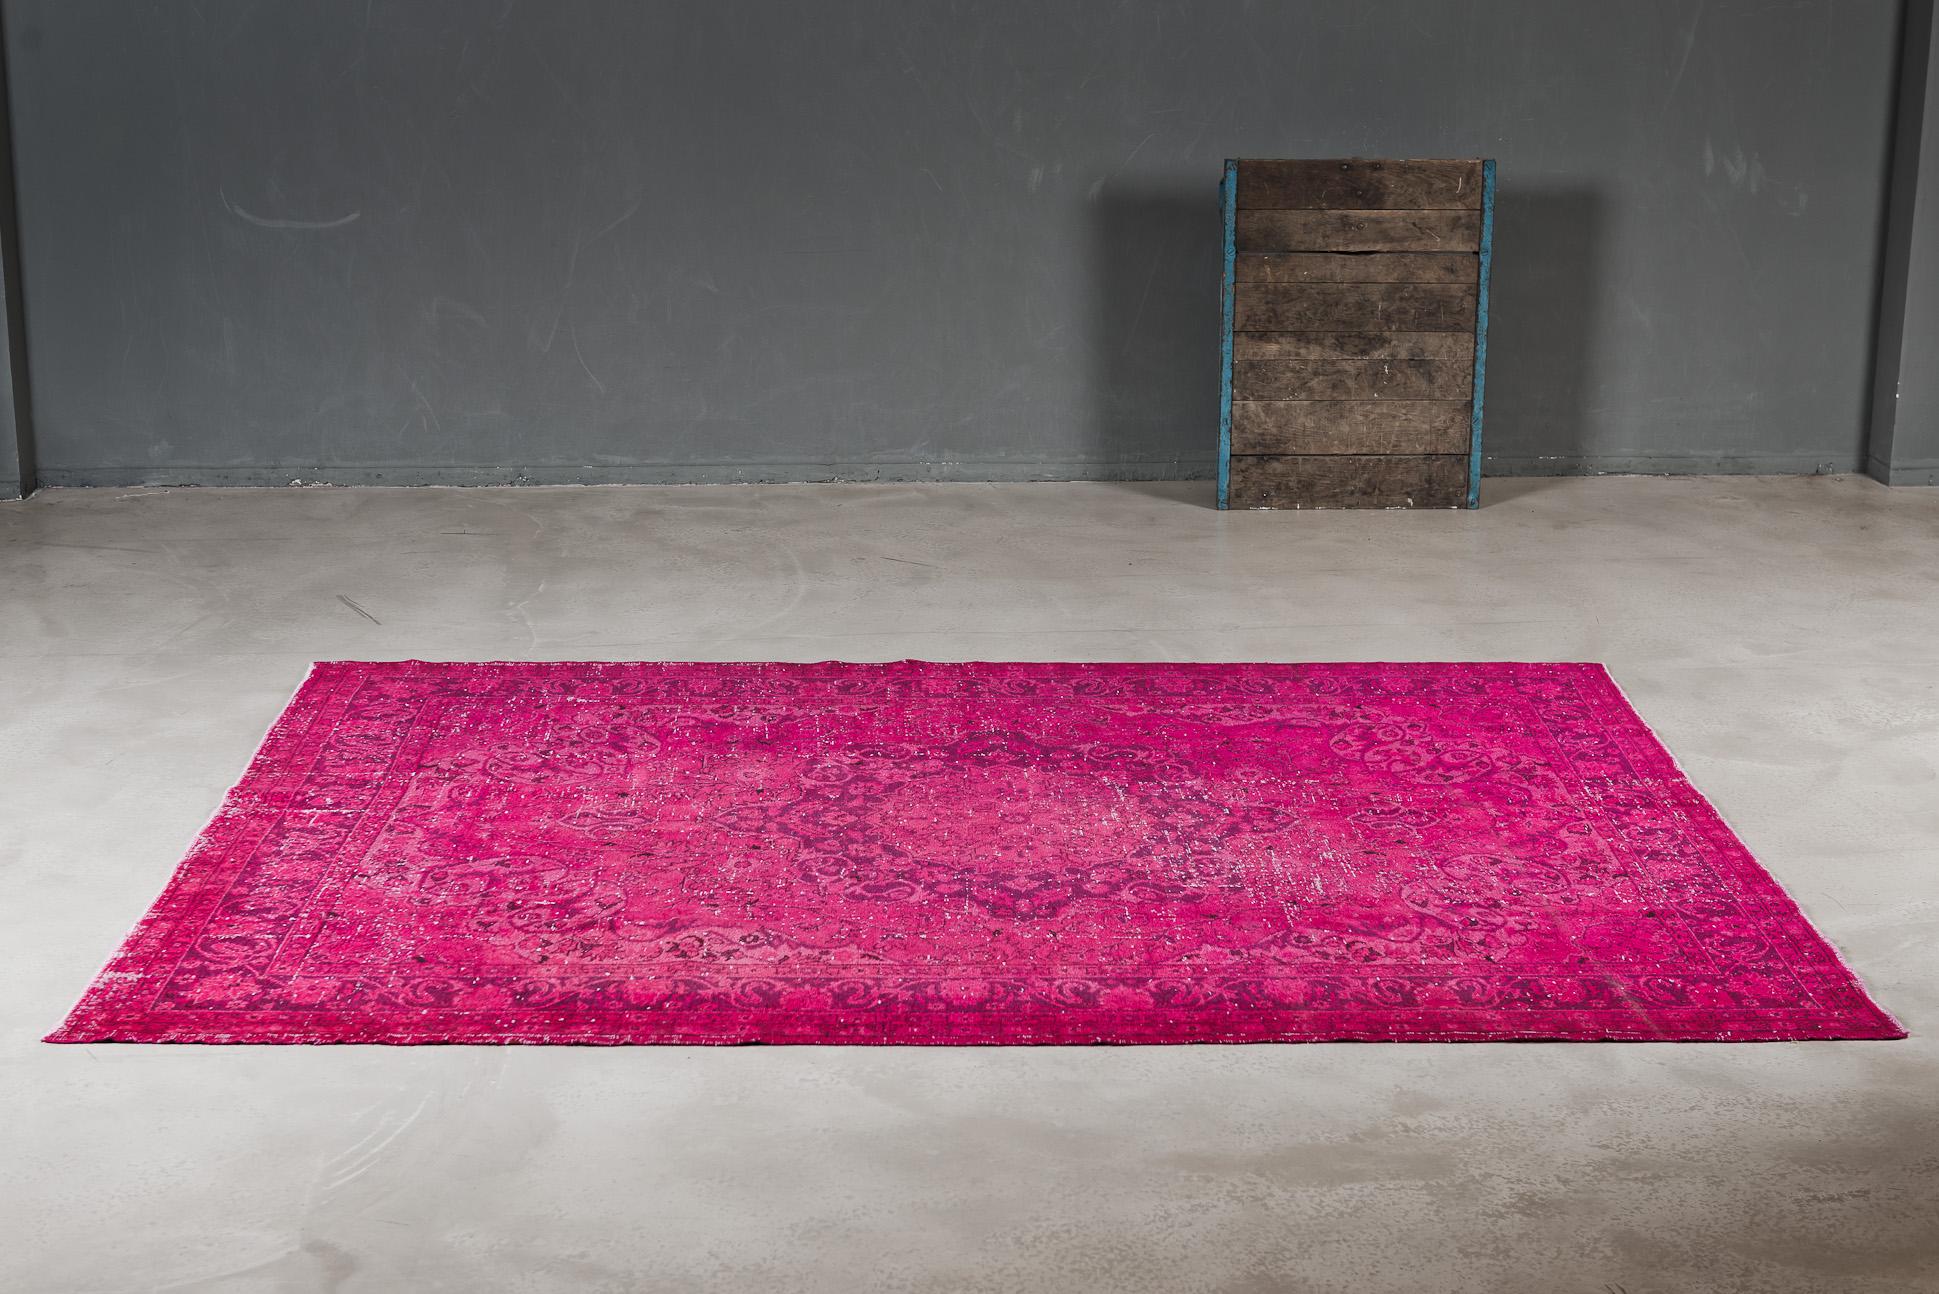 Vintage Teppich in intensivem Pink #teppich #pinkfarbenerteppich ©THE KNOTS